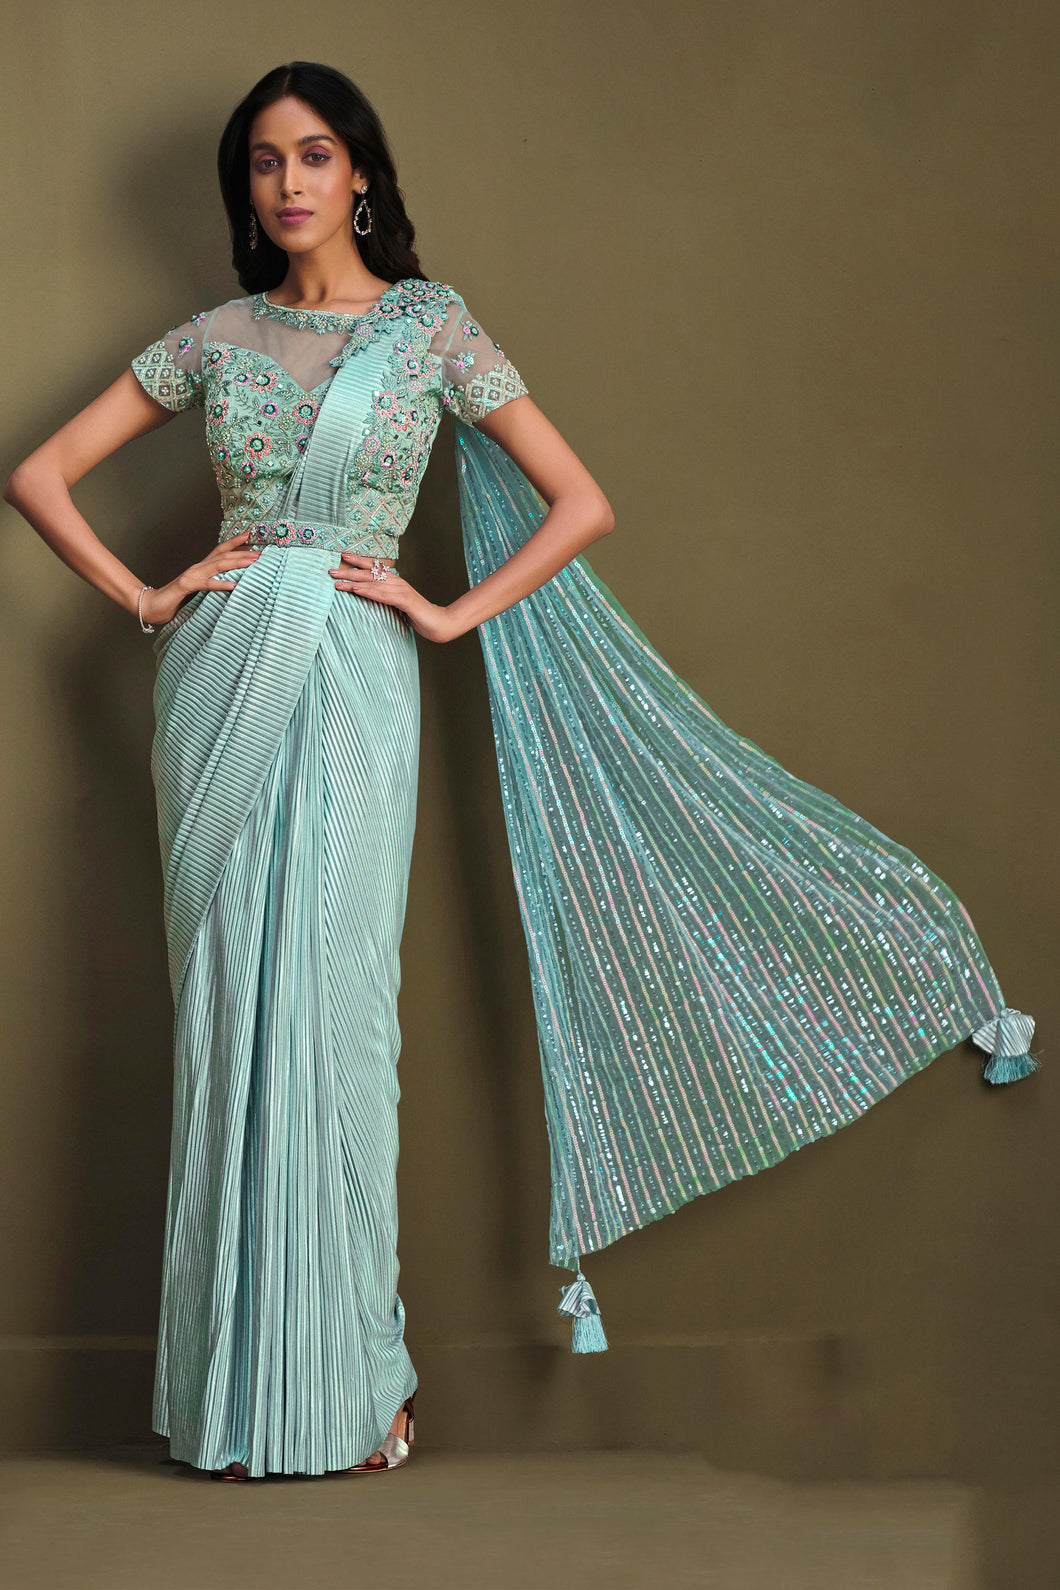 Saree Collection Online - Rent Designer Ethnic Saree for Women and Men  @Rentitbae.com